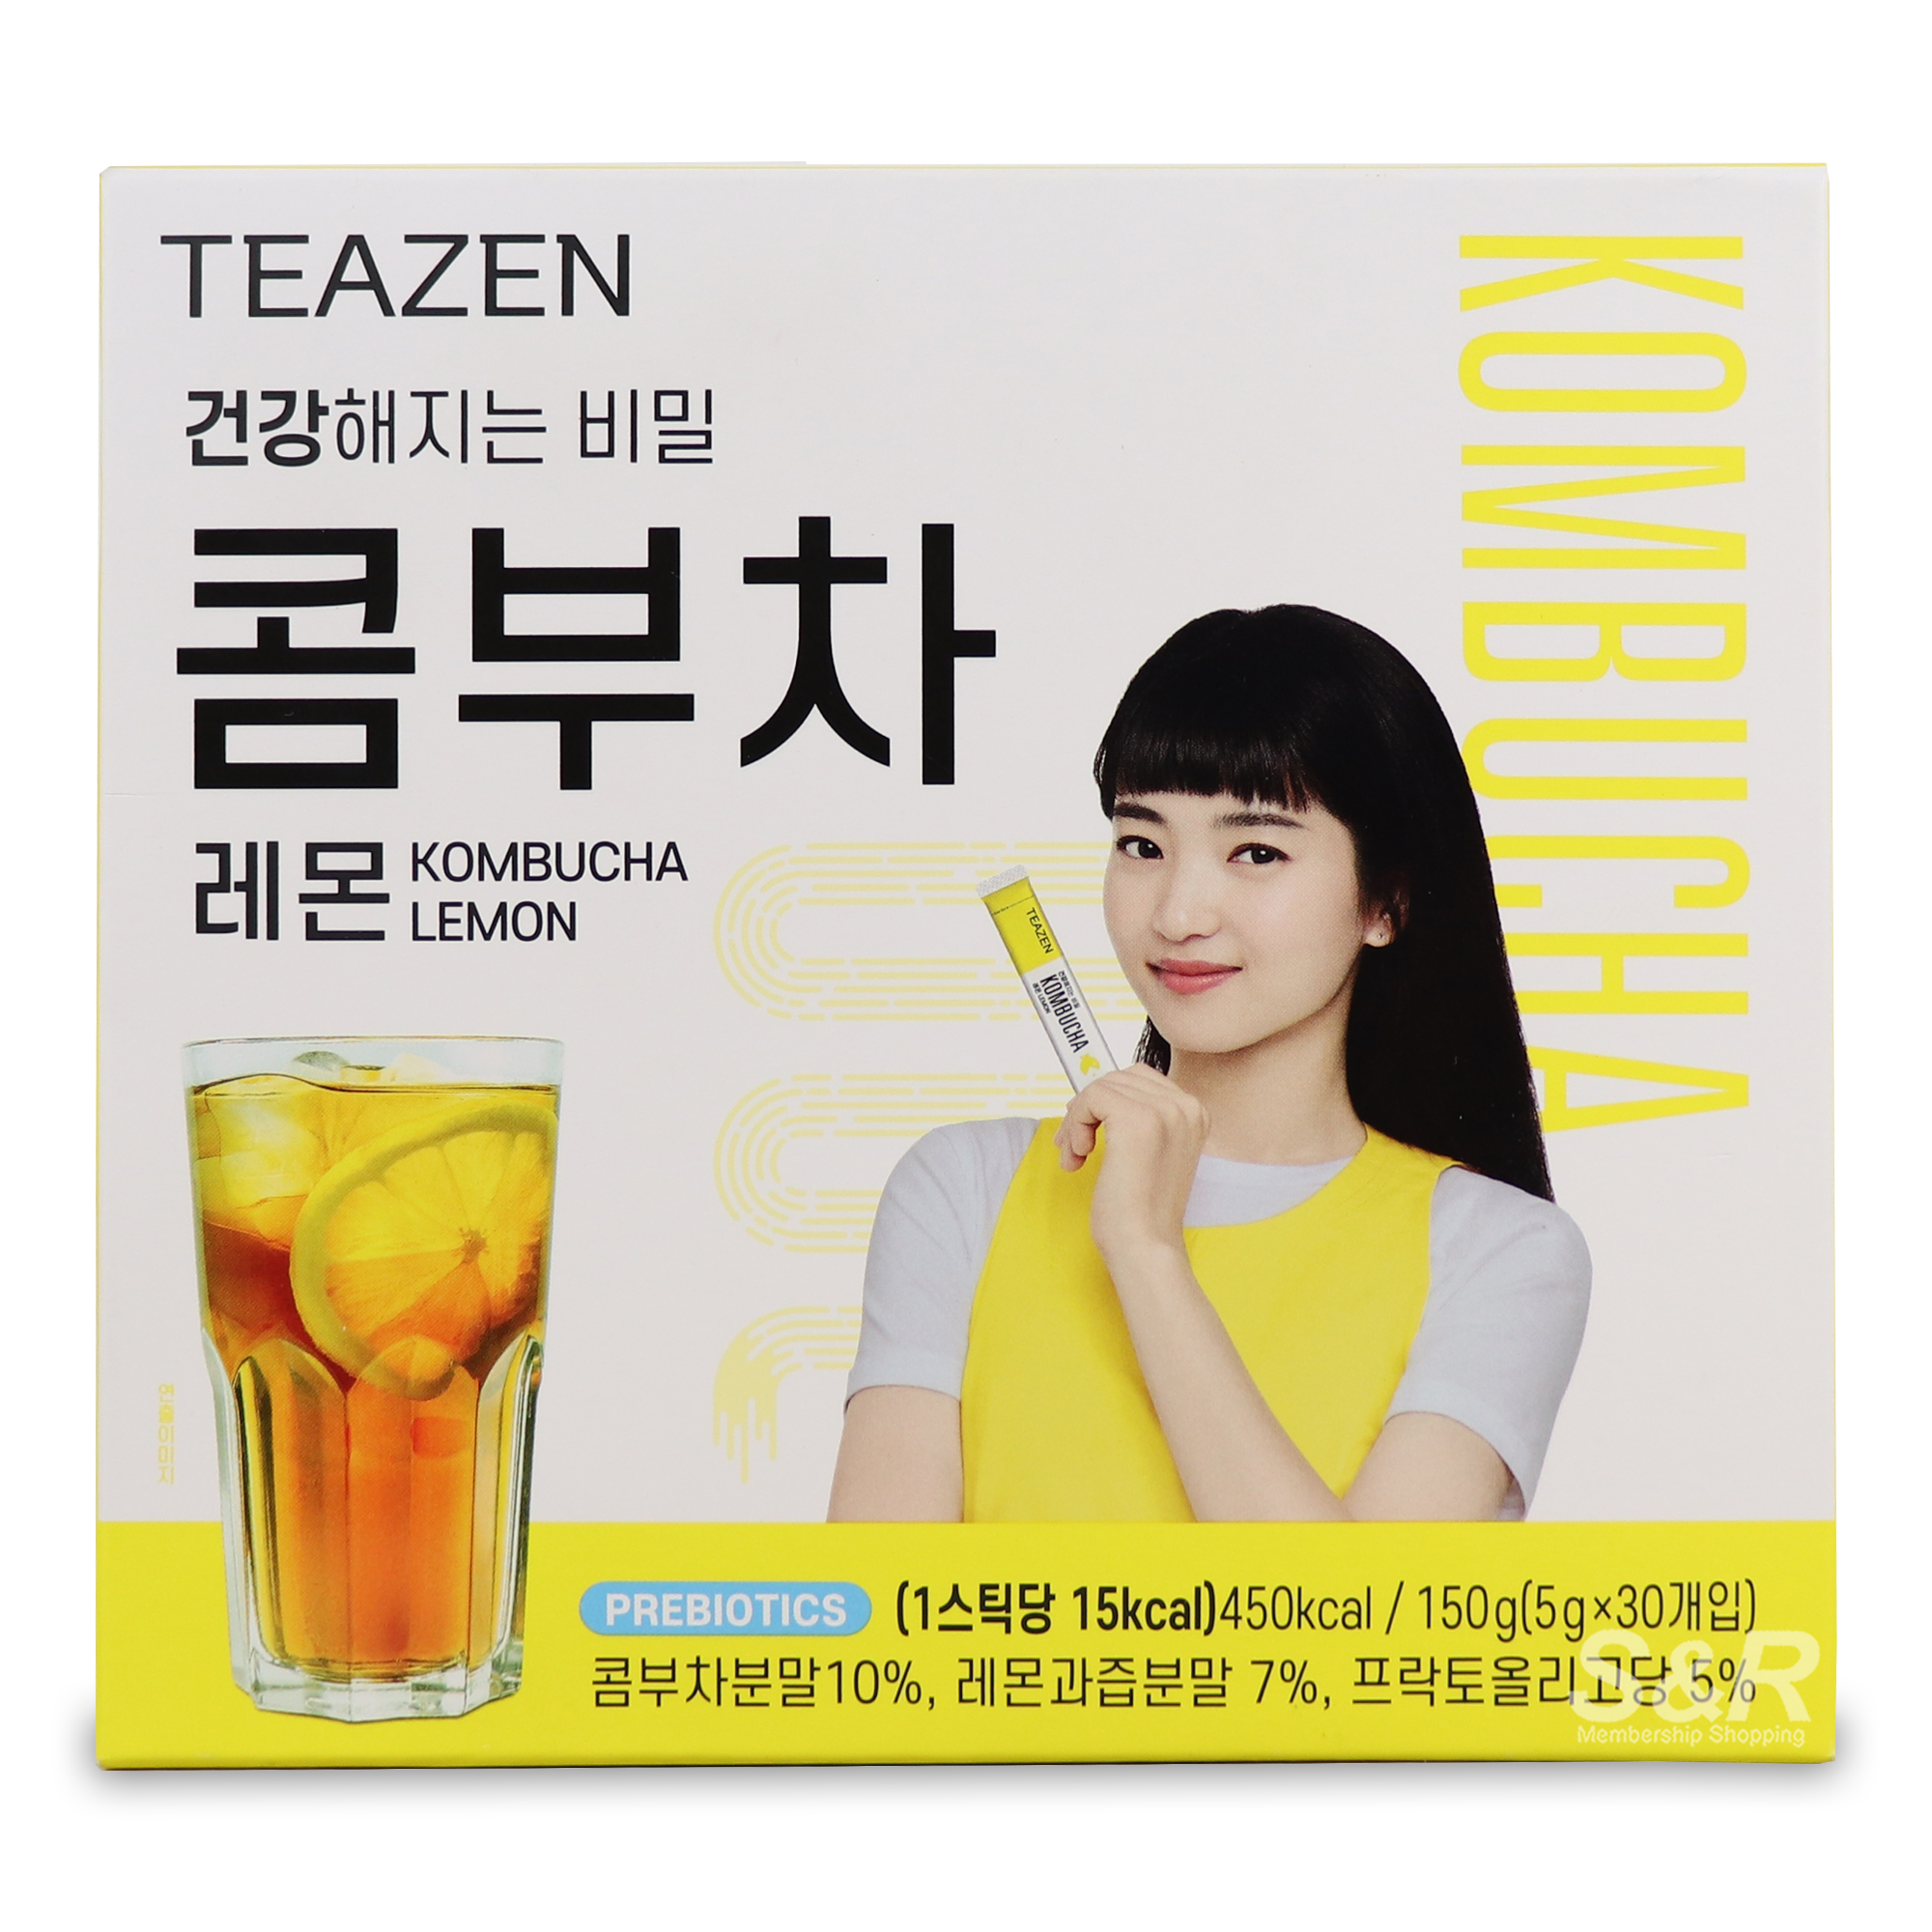 Teazen Kombucha Lemon Tea 30pcs x 5g